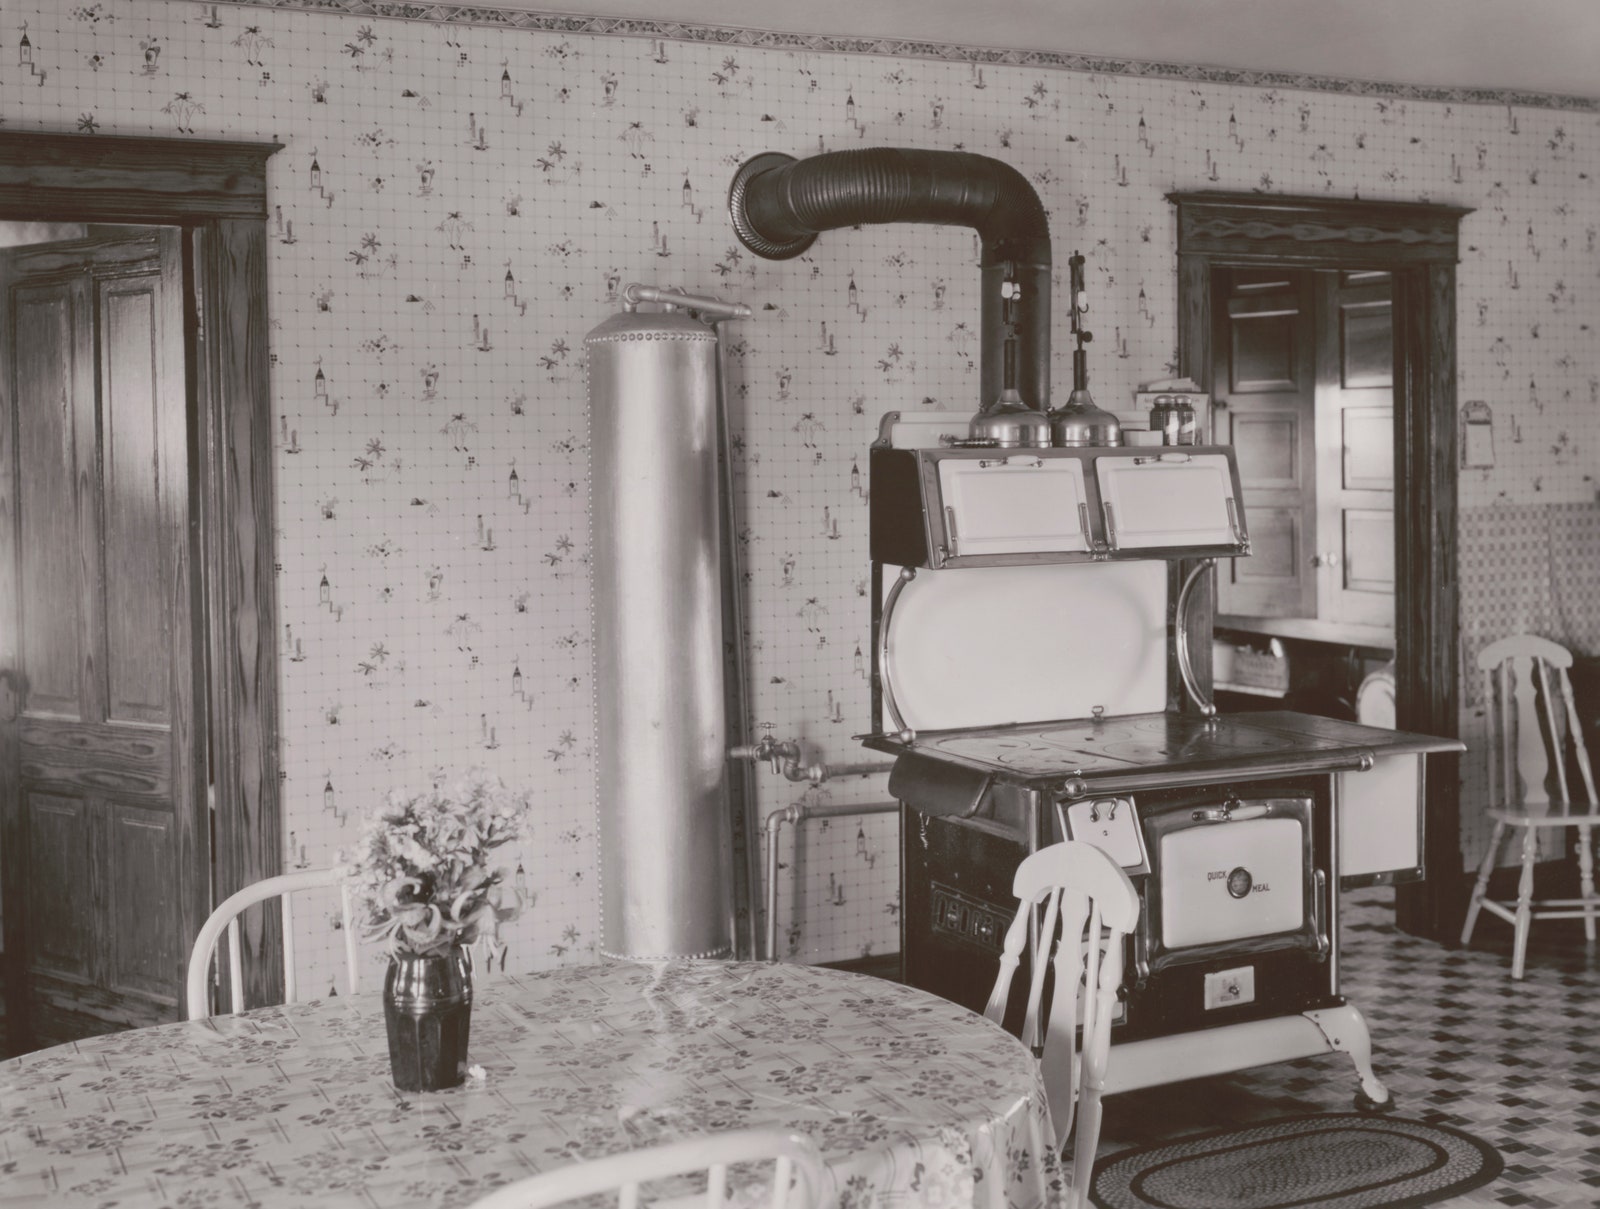 Кухня с плитой подключенной к баллону с пропаном 1925 год.